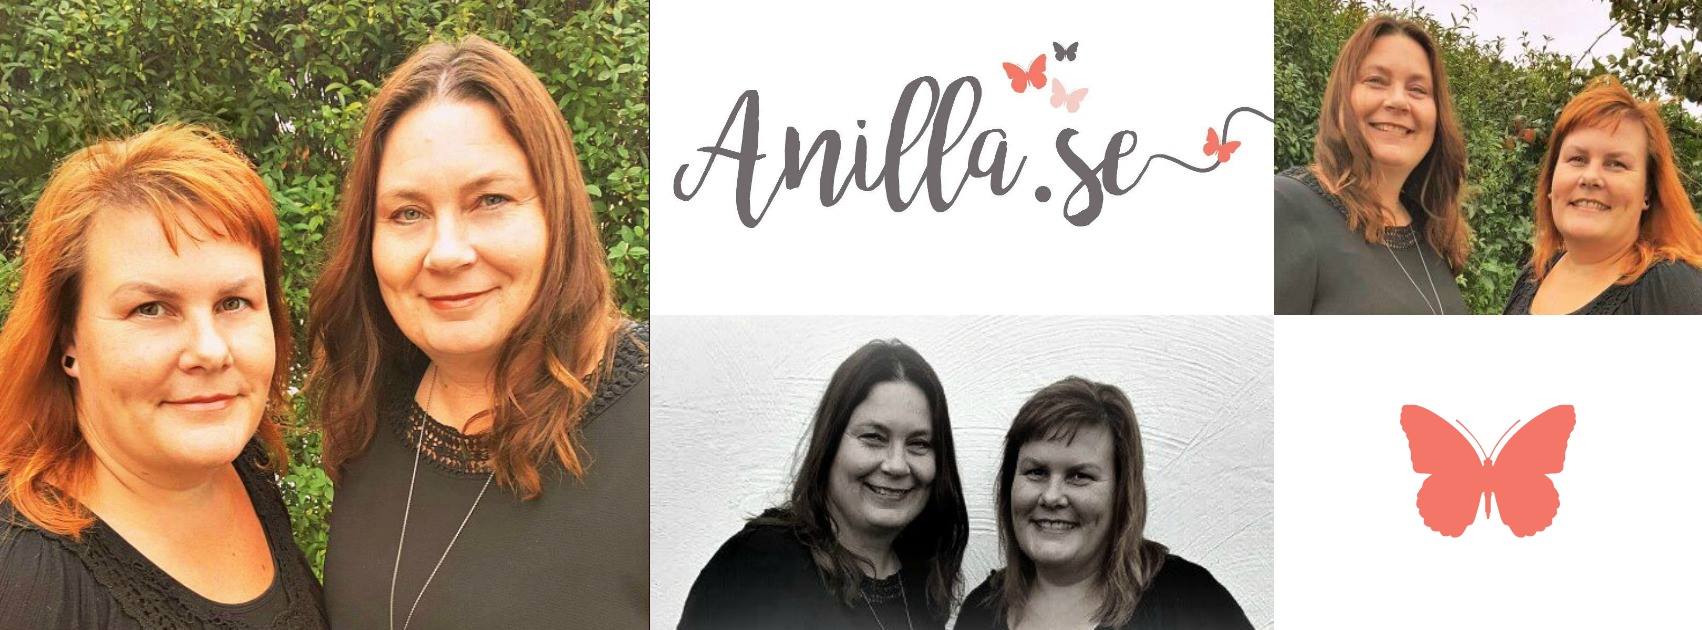 Anna & Camilla, Anilla.se